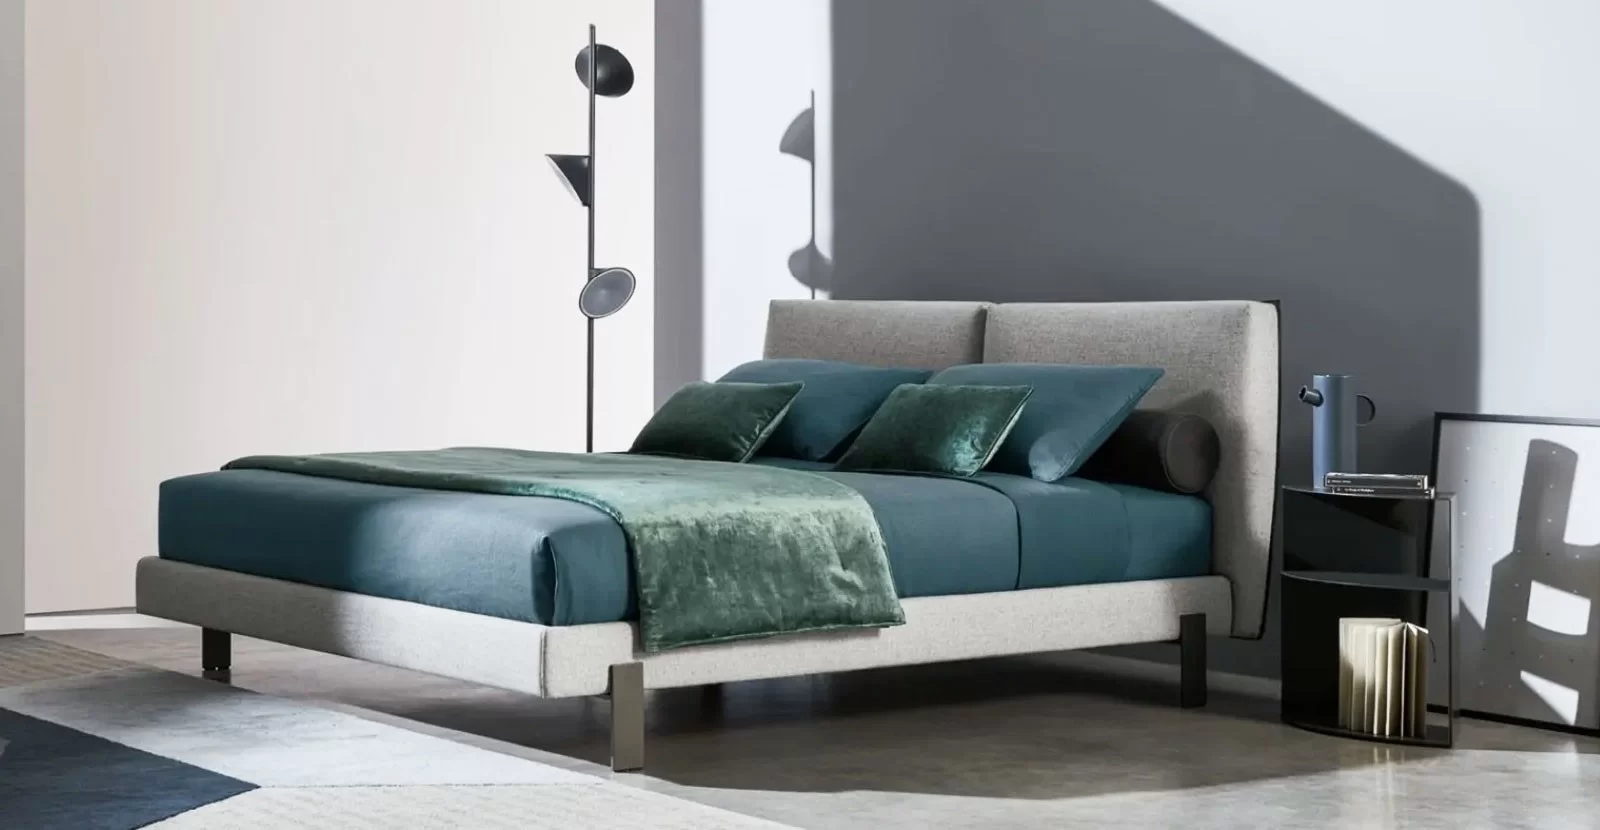 Scopri i migliori mobili per la camera da letto su Mobilificio Marchese